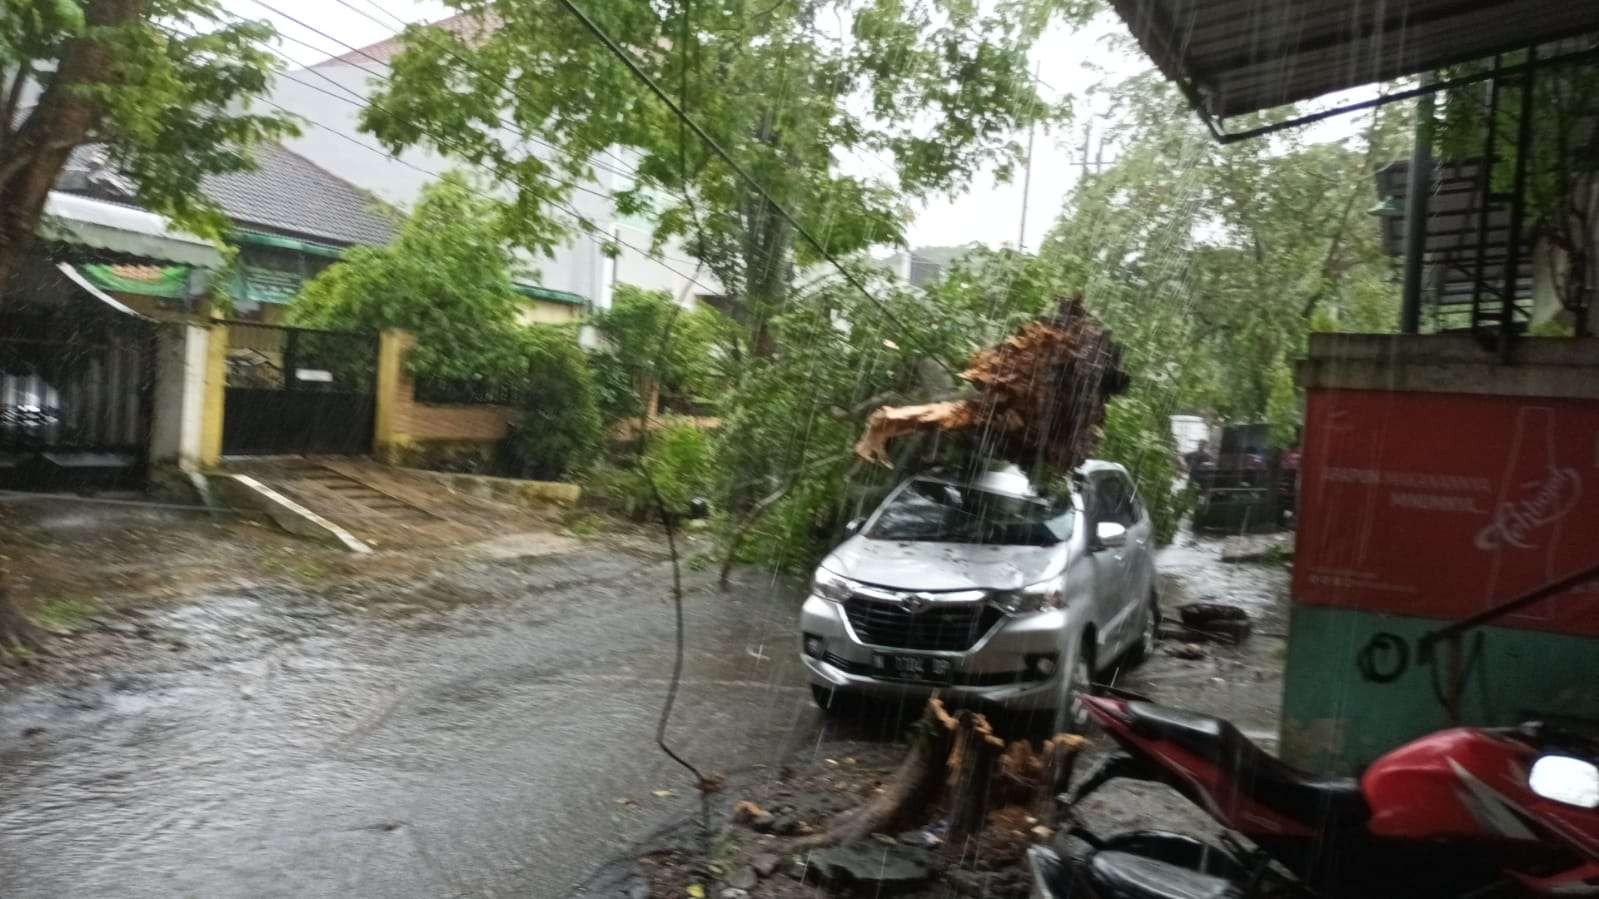 Pohon tumbang menimpa satu unit mobil di Kota Malang. (Foto: istimewa)